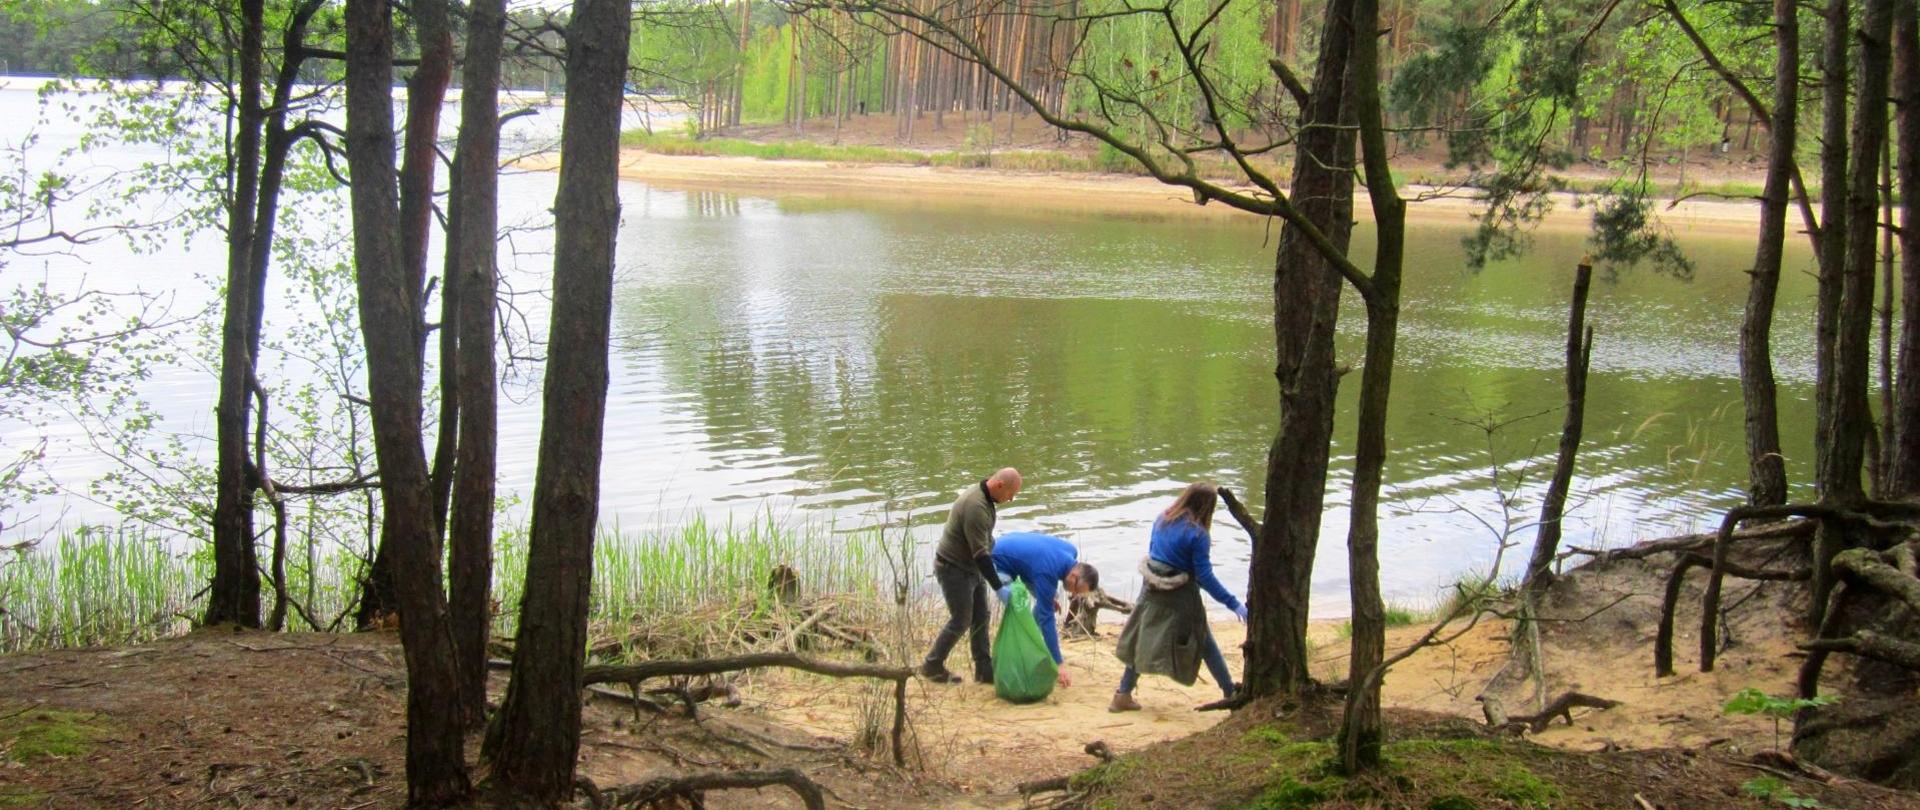 Sprzątanie zbiornika Kobyla Góra zorganizowane przez pracowników Wód Polskich z Zarządu Zlewni w Lesznie i podległych Nadzorów Wodnych.